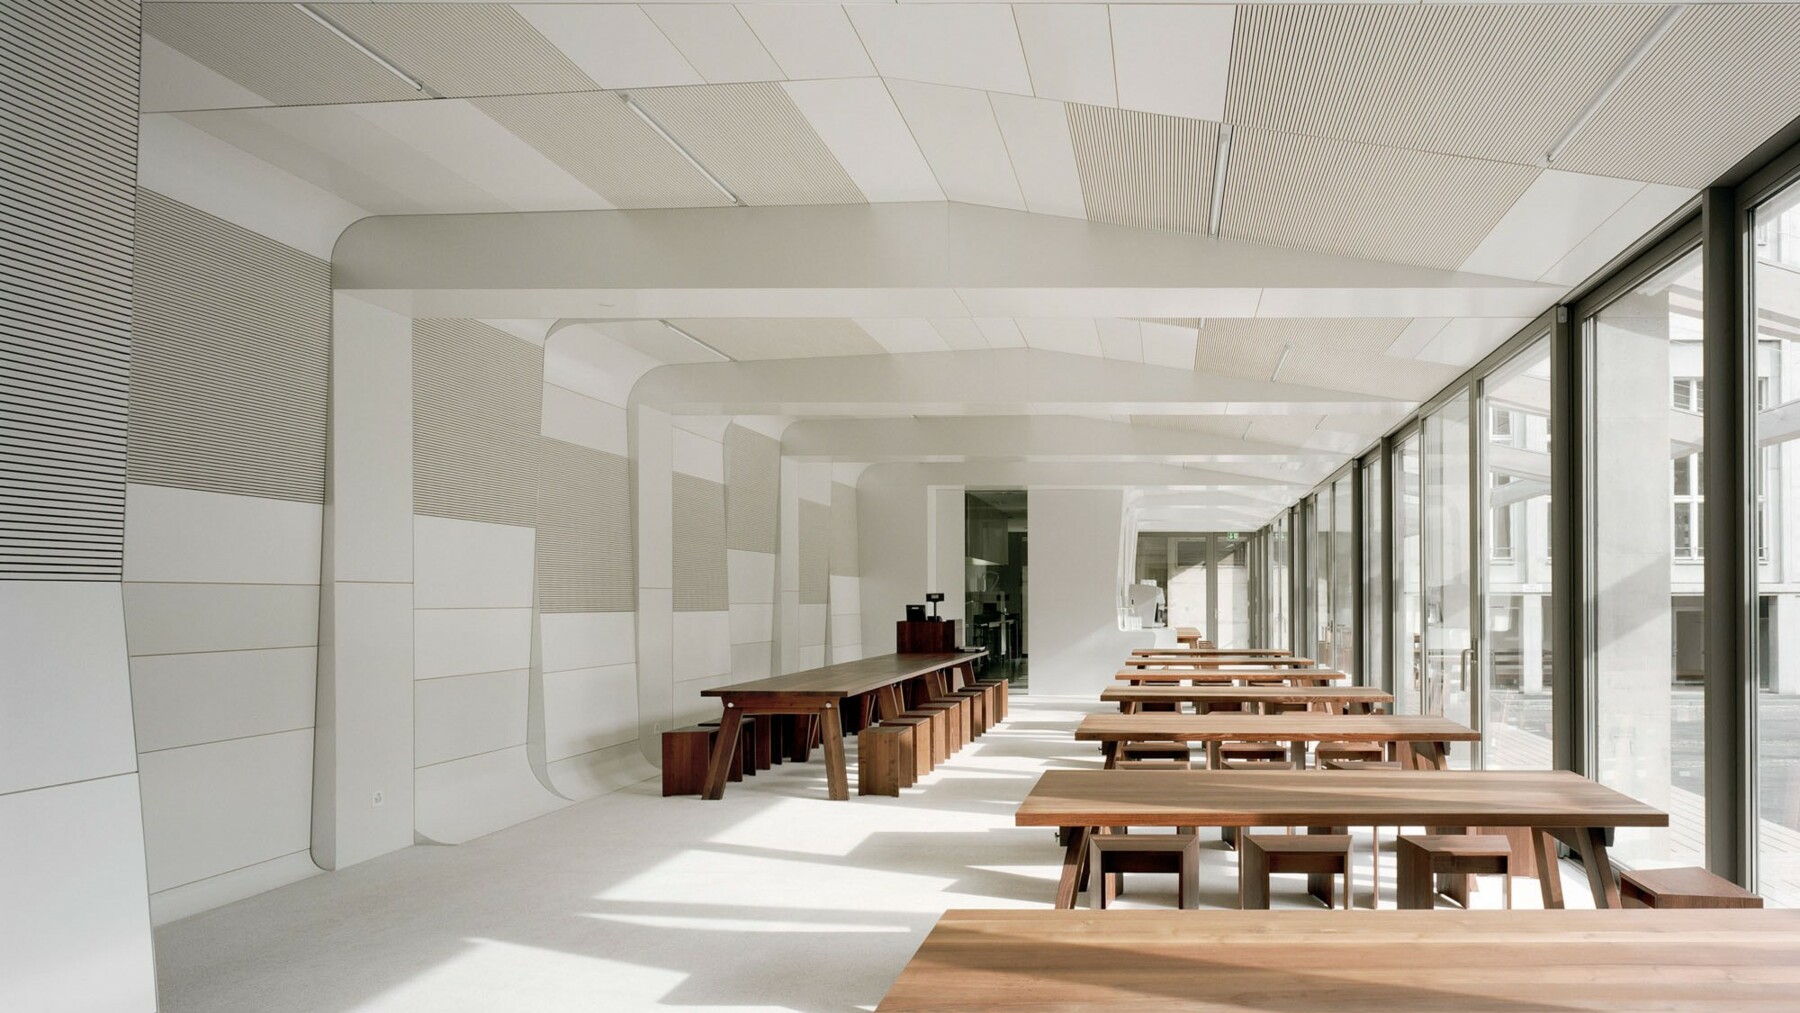 Das Sichtbeton-Tragwerk der Mensa verkleideten die Architekten komplett mit weiß und grau lackierten Holzpaneelen made of LIGNO®, welche einen reizvollen Kontrast zum dunklen Holzton der Tische und Stühle bilden.